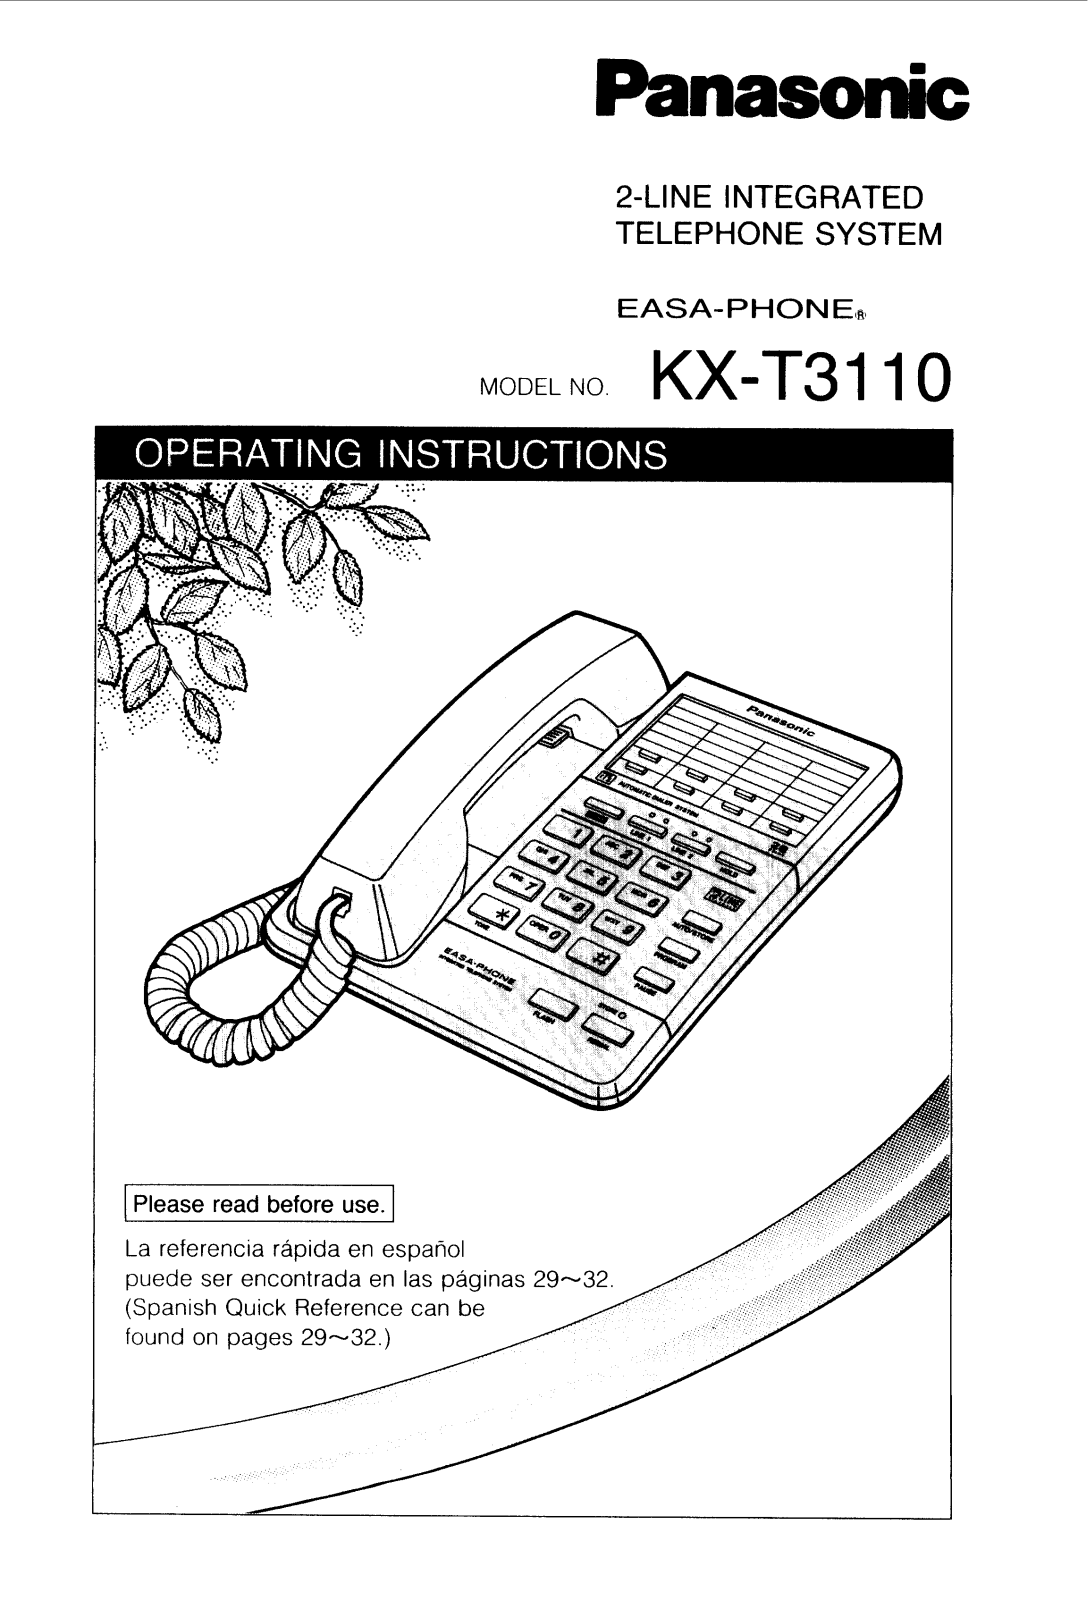 Panasonic kx-t3110 Operation Manual